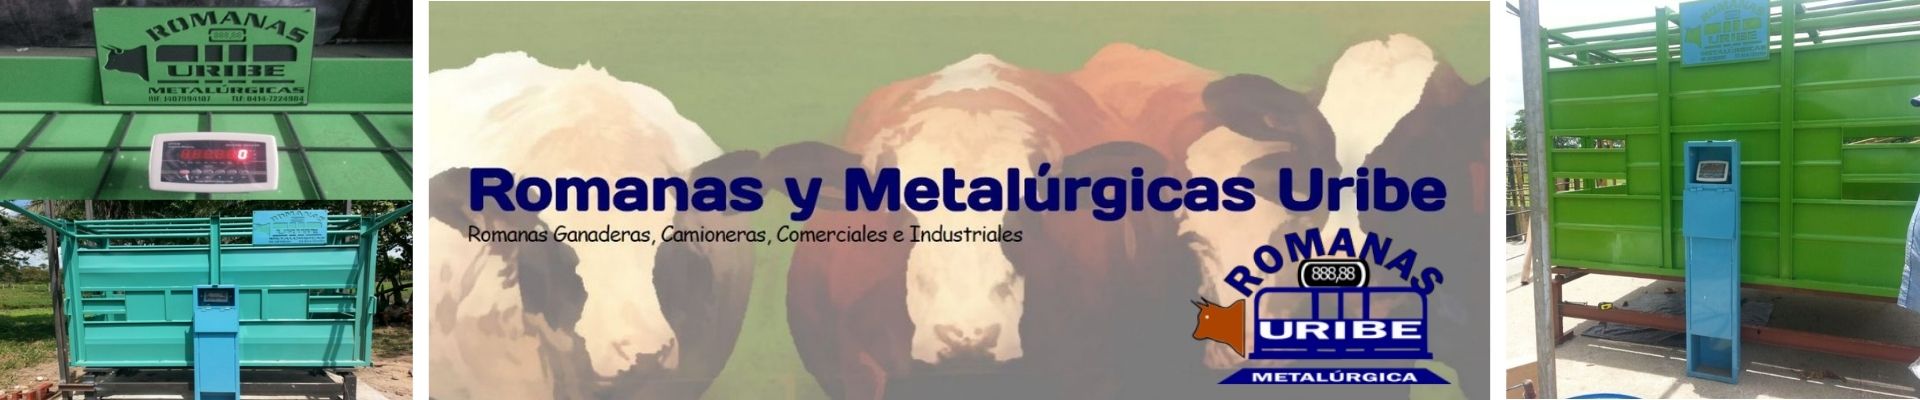 Banner Romanas y Metalúrgicas Uribe